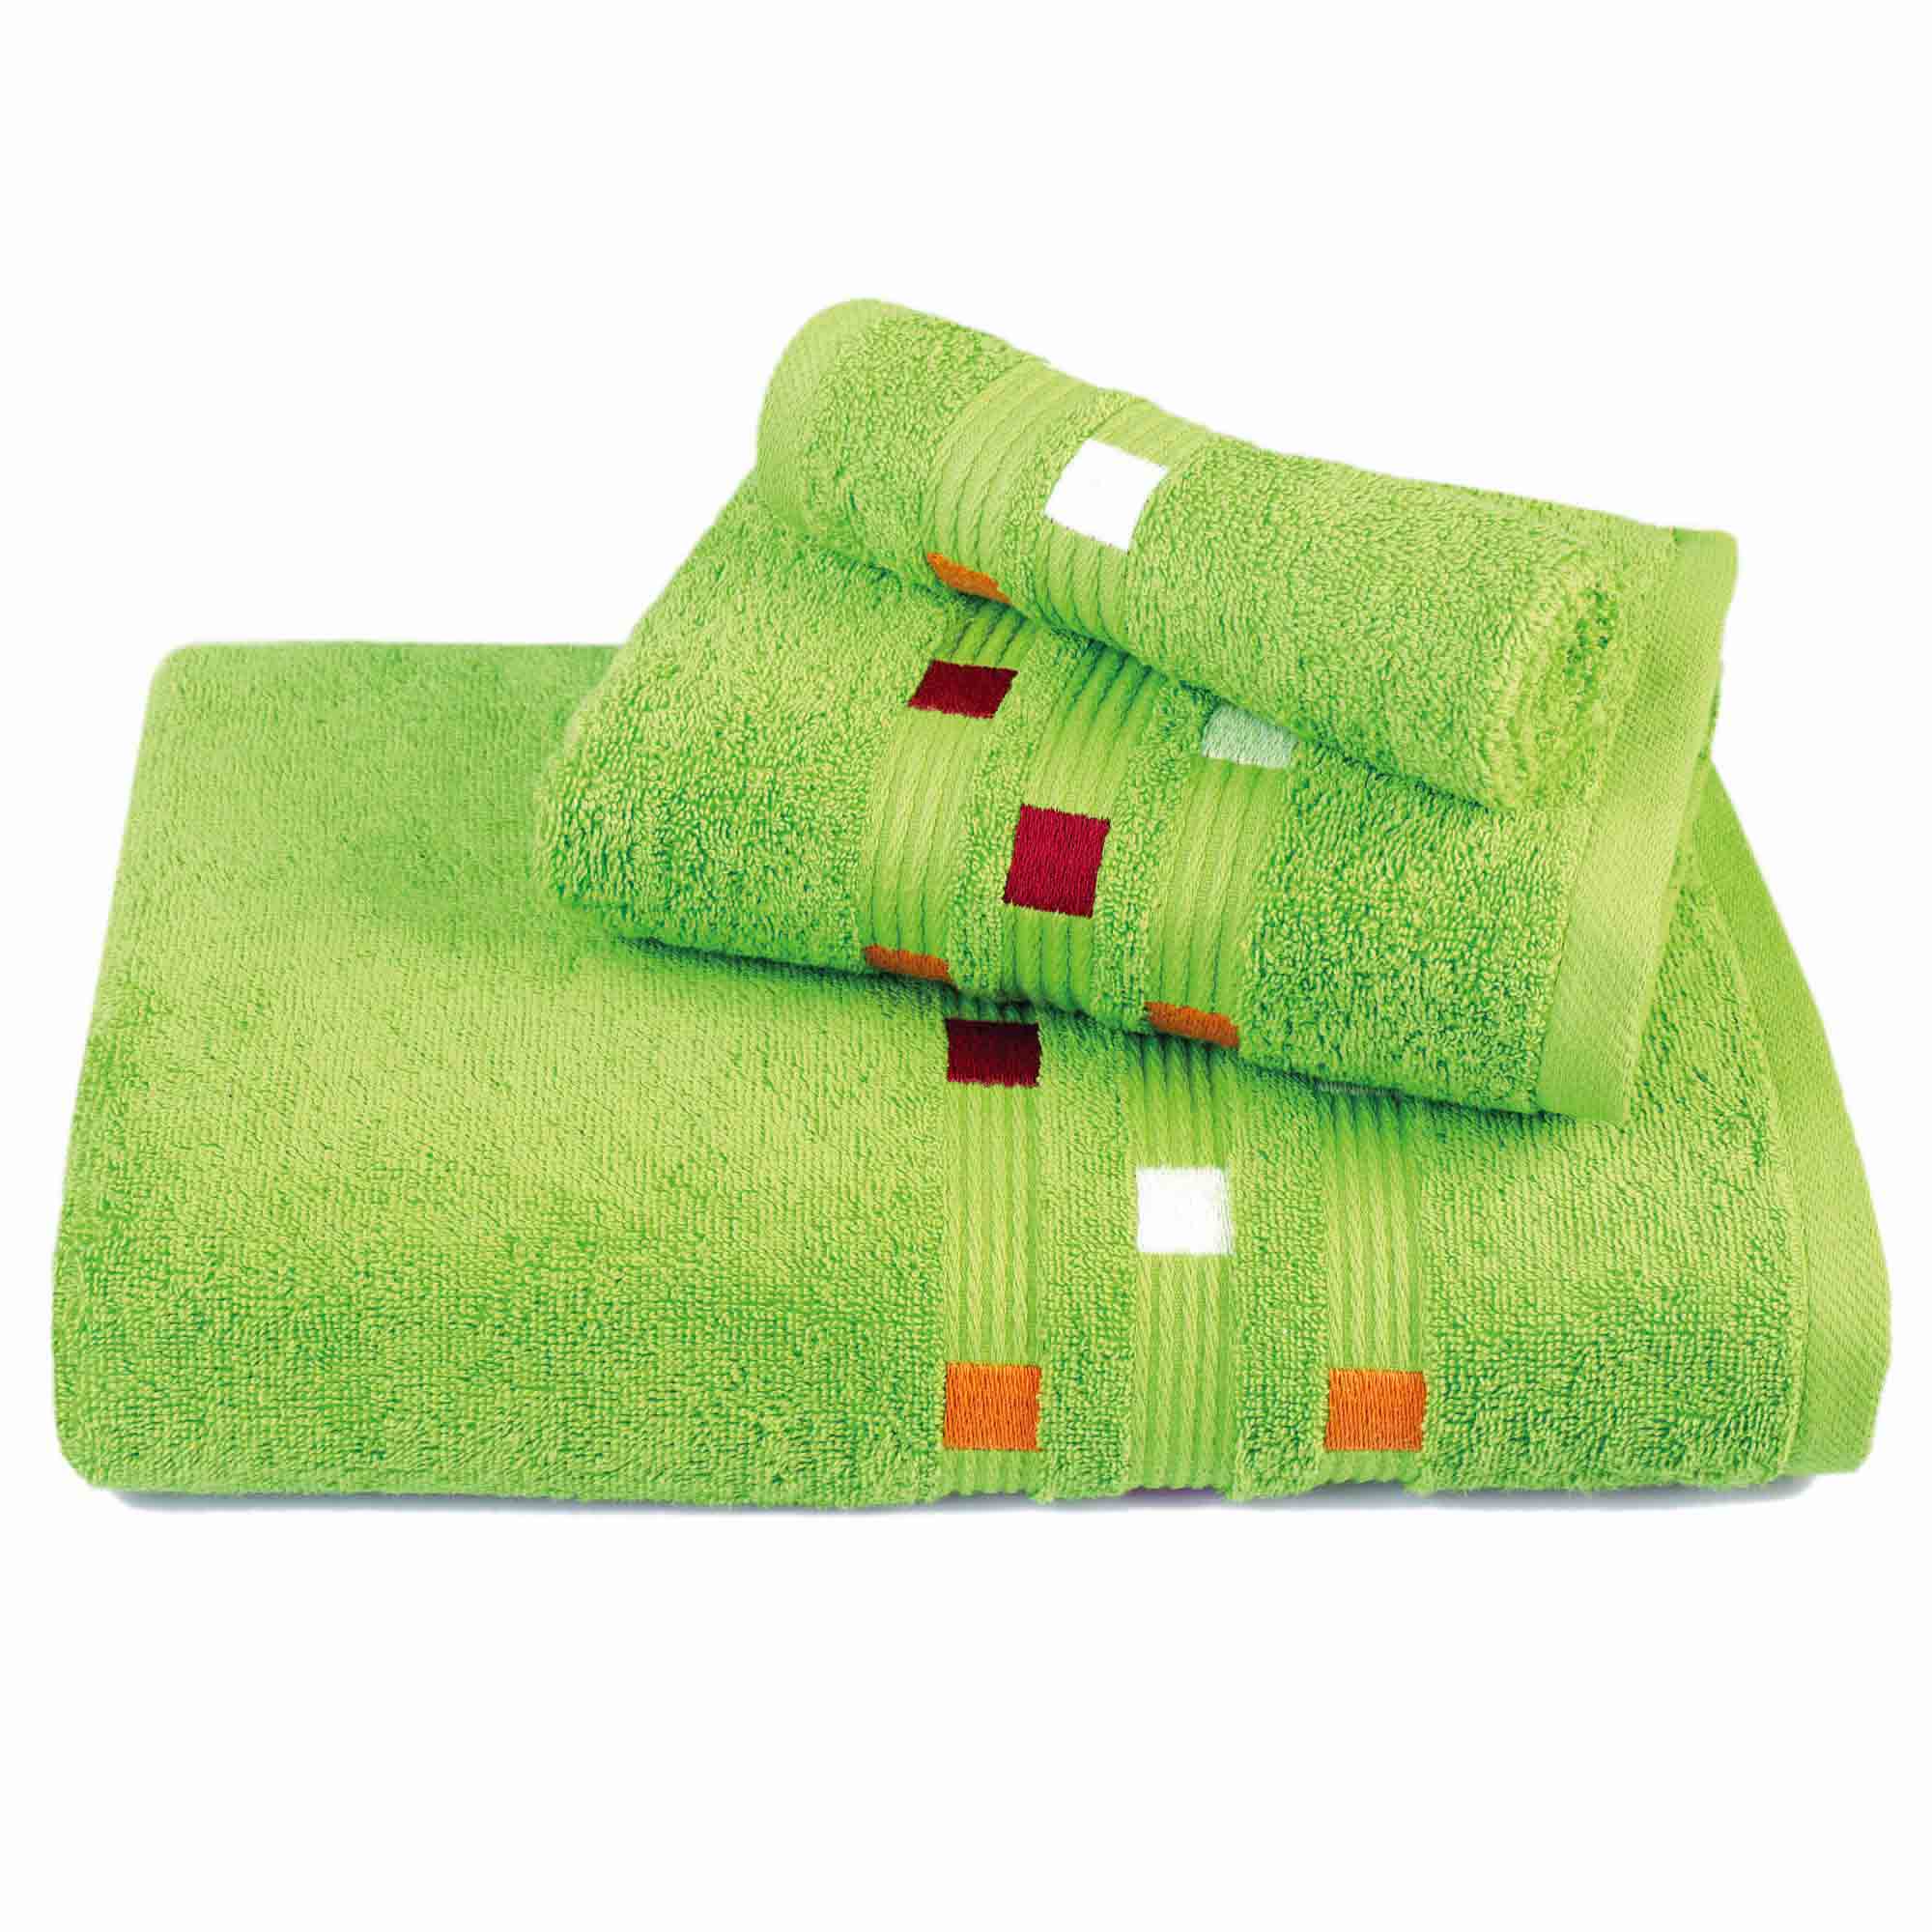 Panache - 3 Piece Towel Set